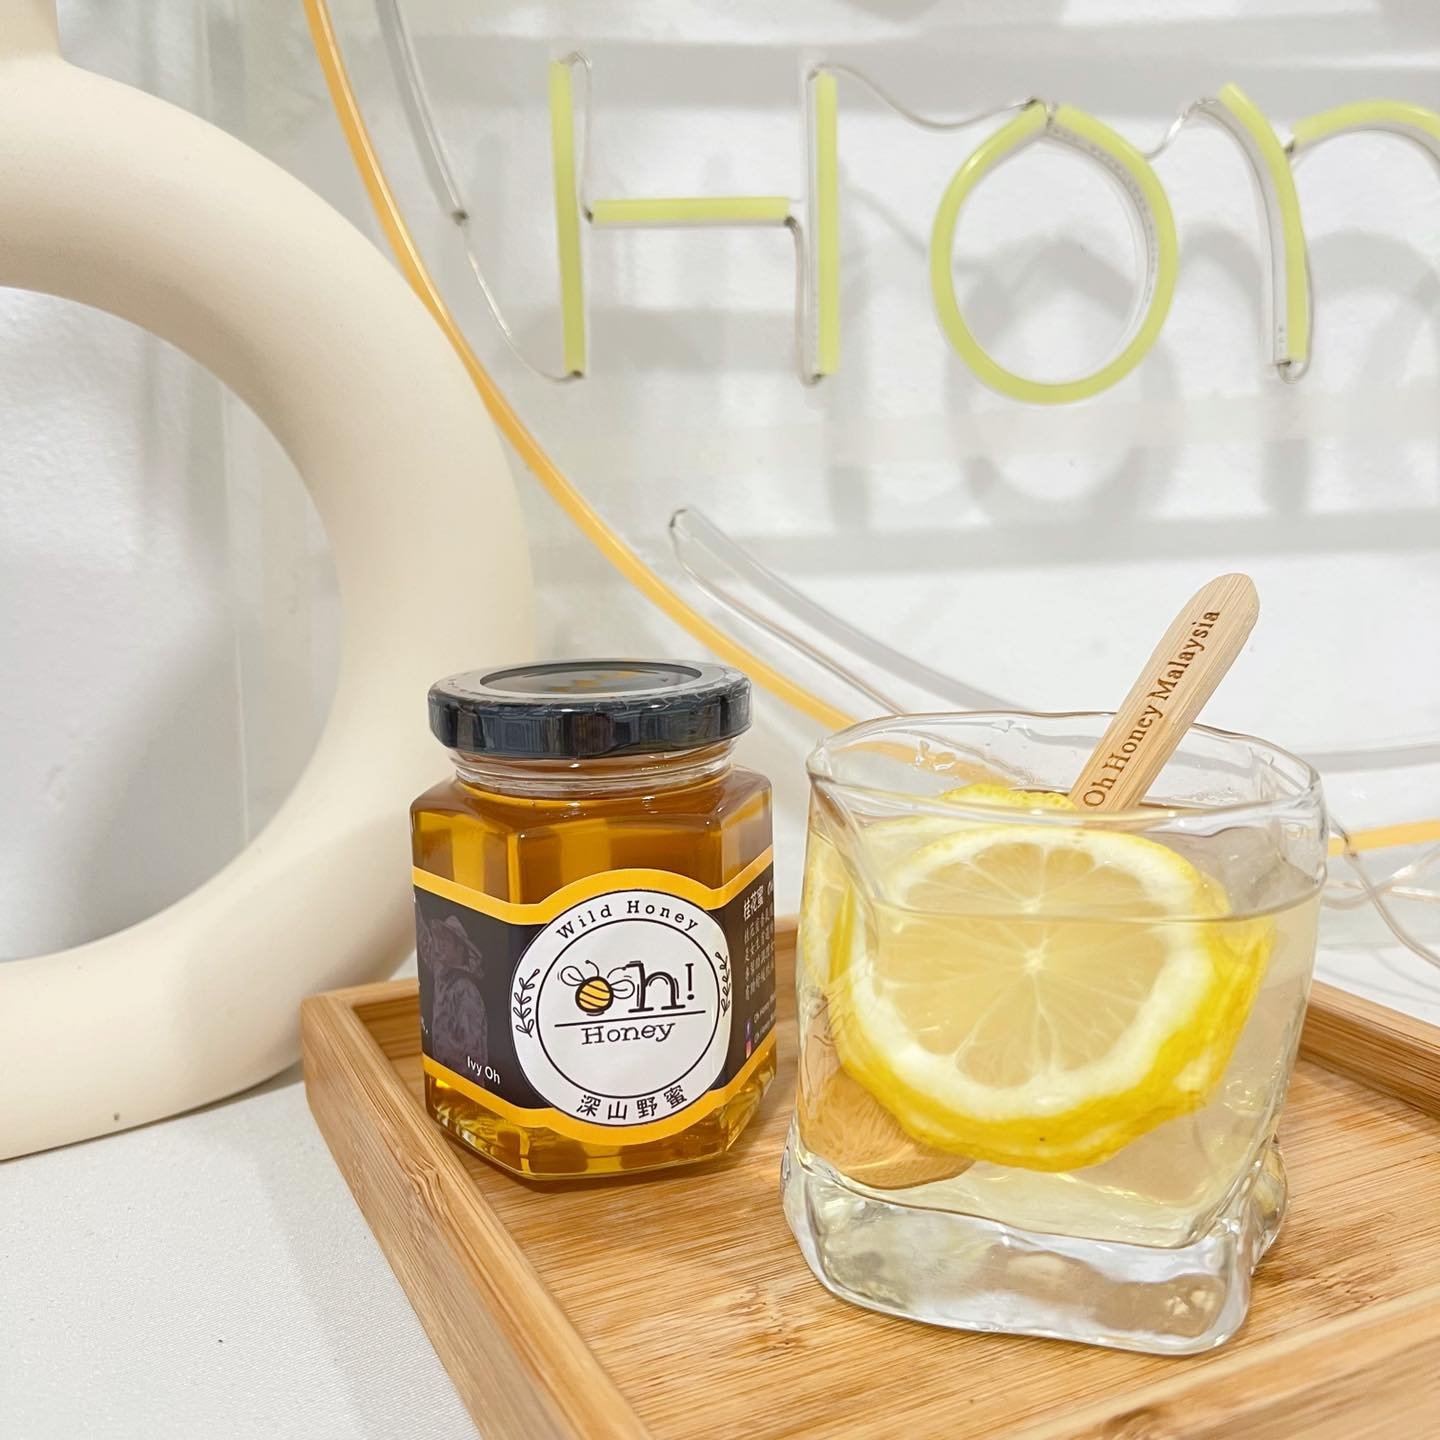 胡艾薇创立的Oh Honey Malaysia品牌，主打“蜜蜂给我什么，我给你什么”口号。